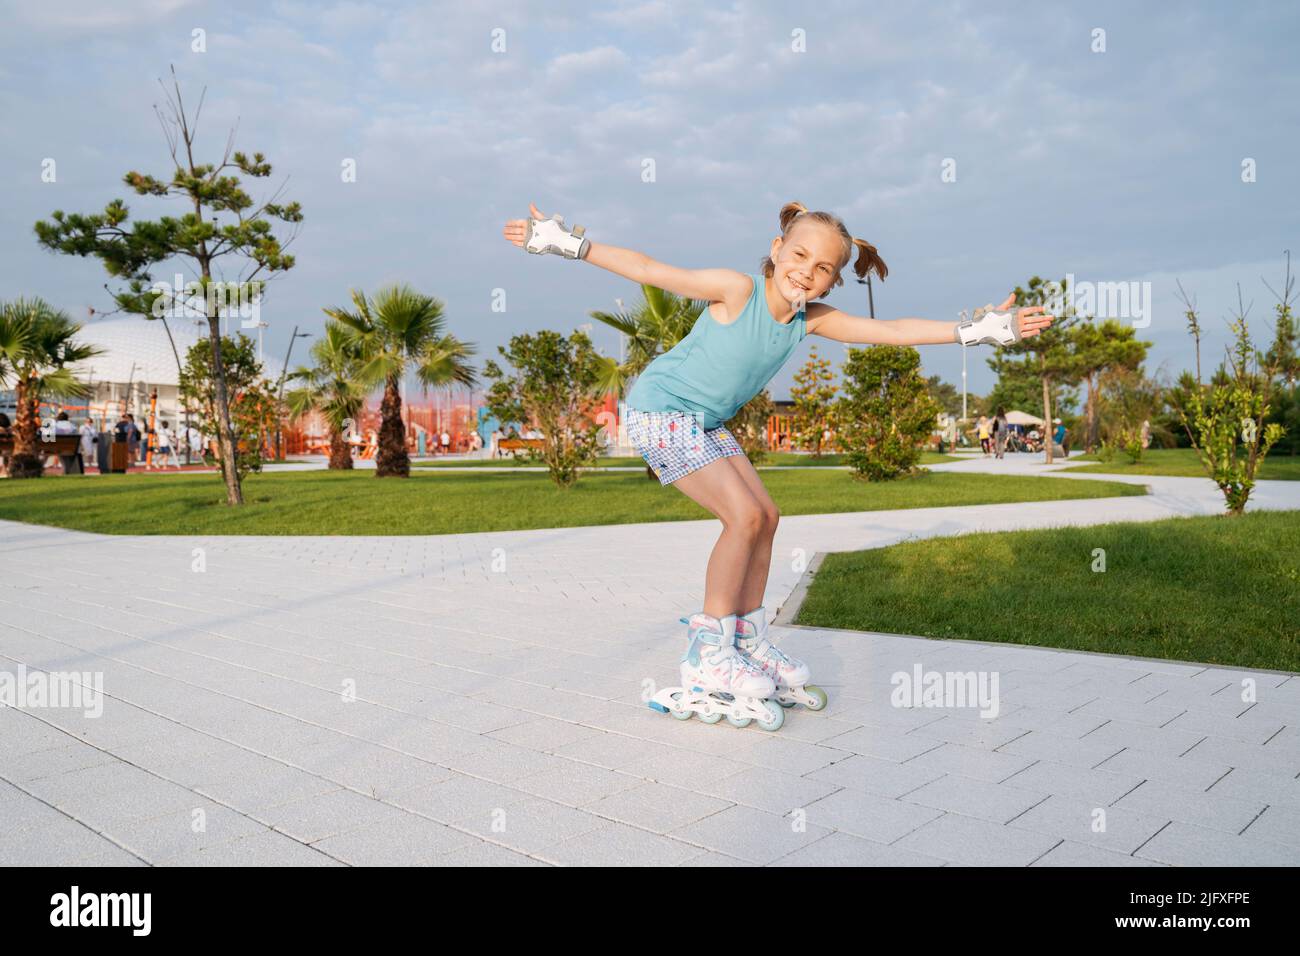 Ein Mädchen ist Rollschuhlaufen in einem Sportpark. Stockfoto